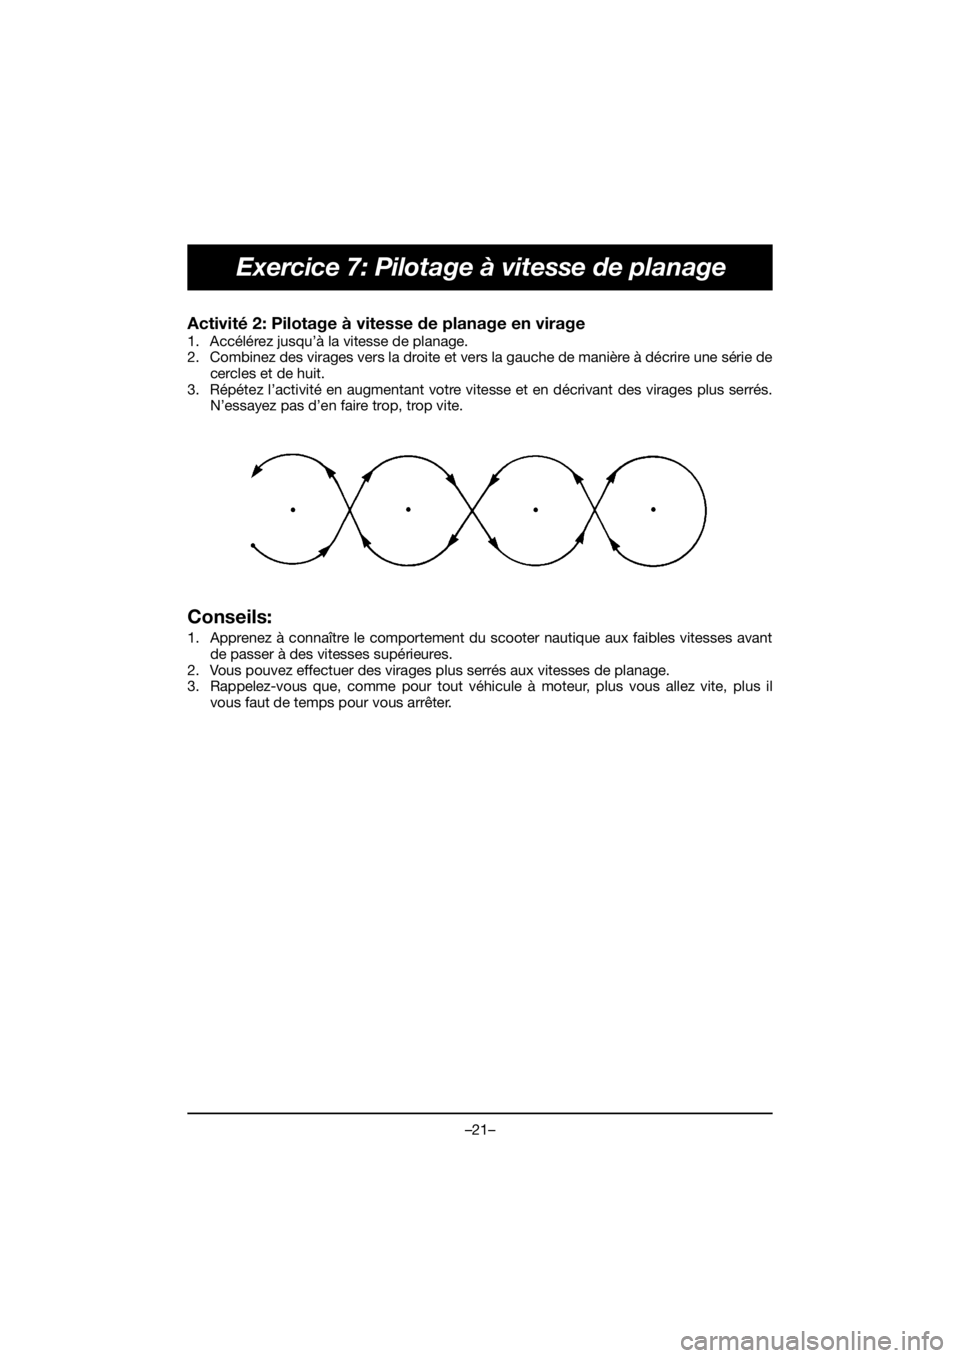 YAMAHA VX DELUXE 2021  Manual de utilização (in Portuguese) –21–
Exercice 7: Pilotage à vitesse de planage
Activité 2: Pilotage à vitesse de planage en virage 
1. Accélérez jusqu’à la vitesse de planage. 
2. Combinez des virages vers la droite et v